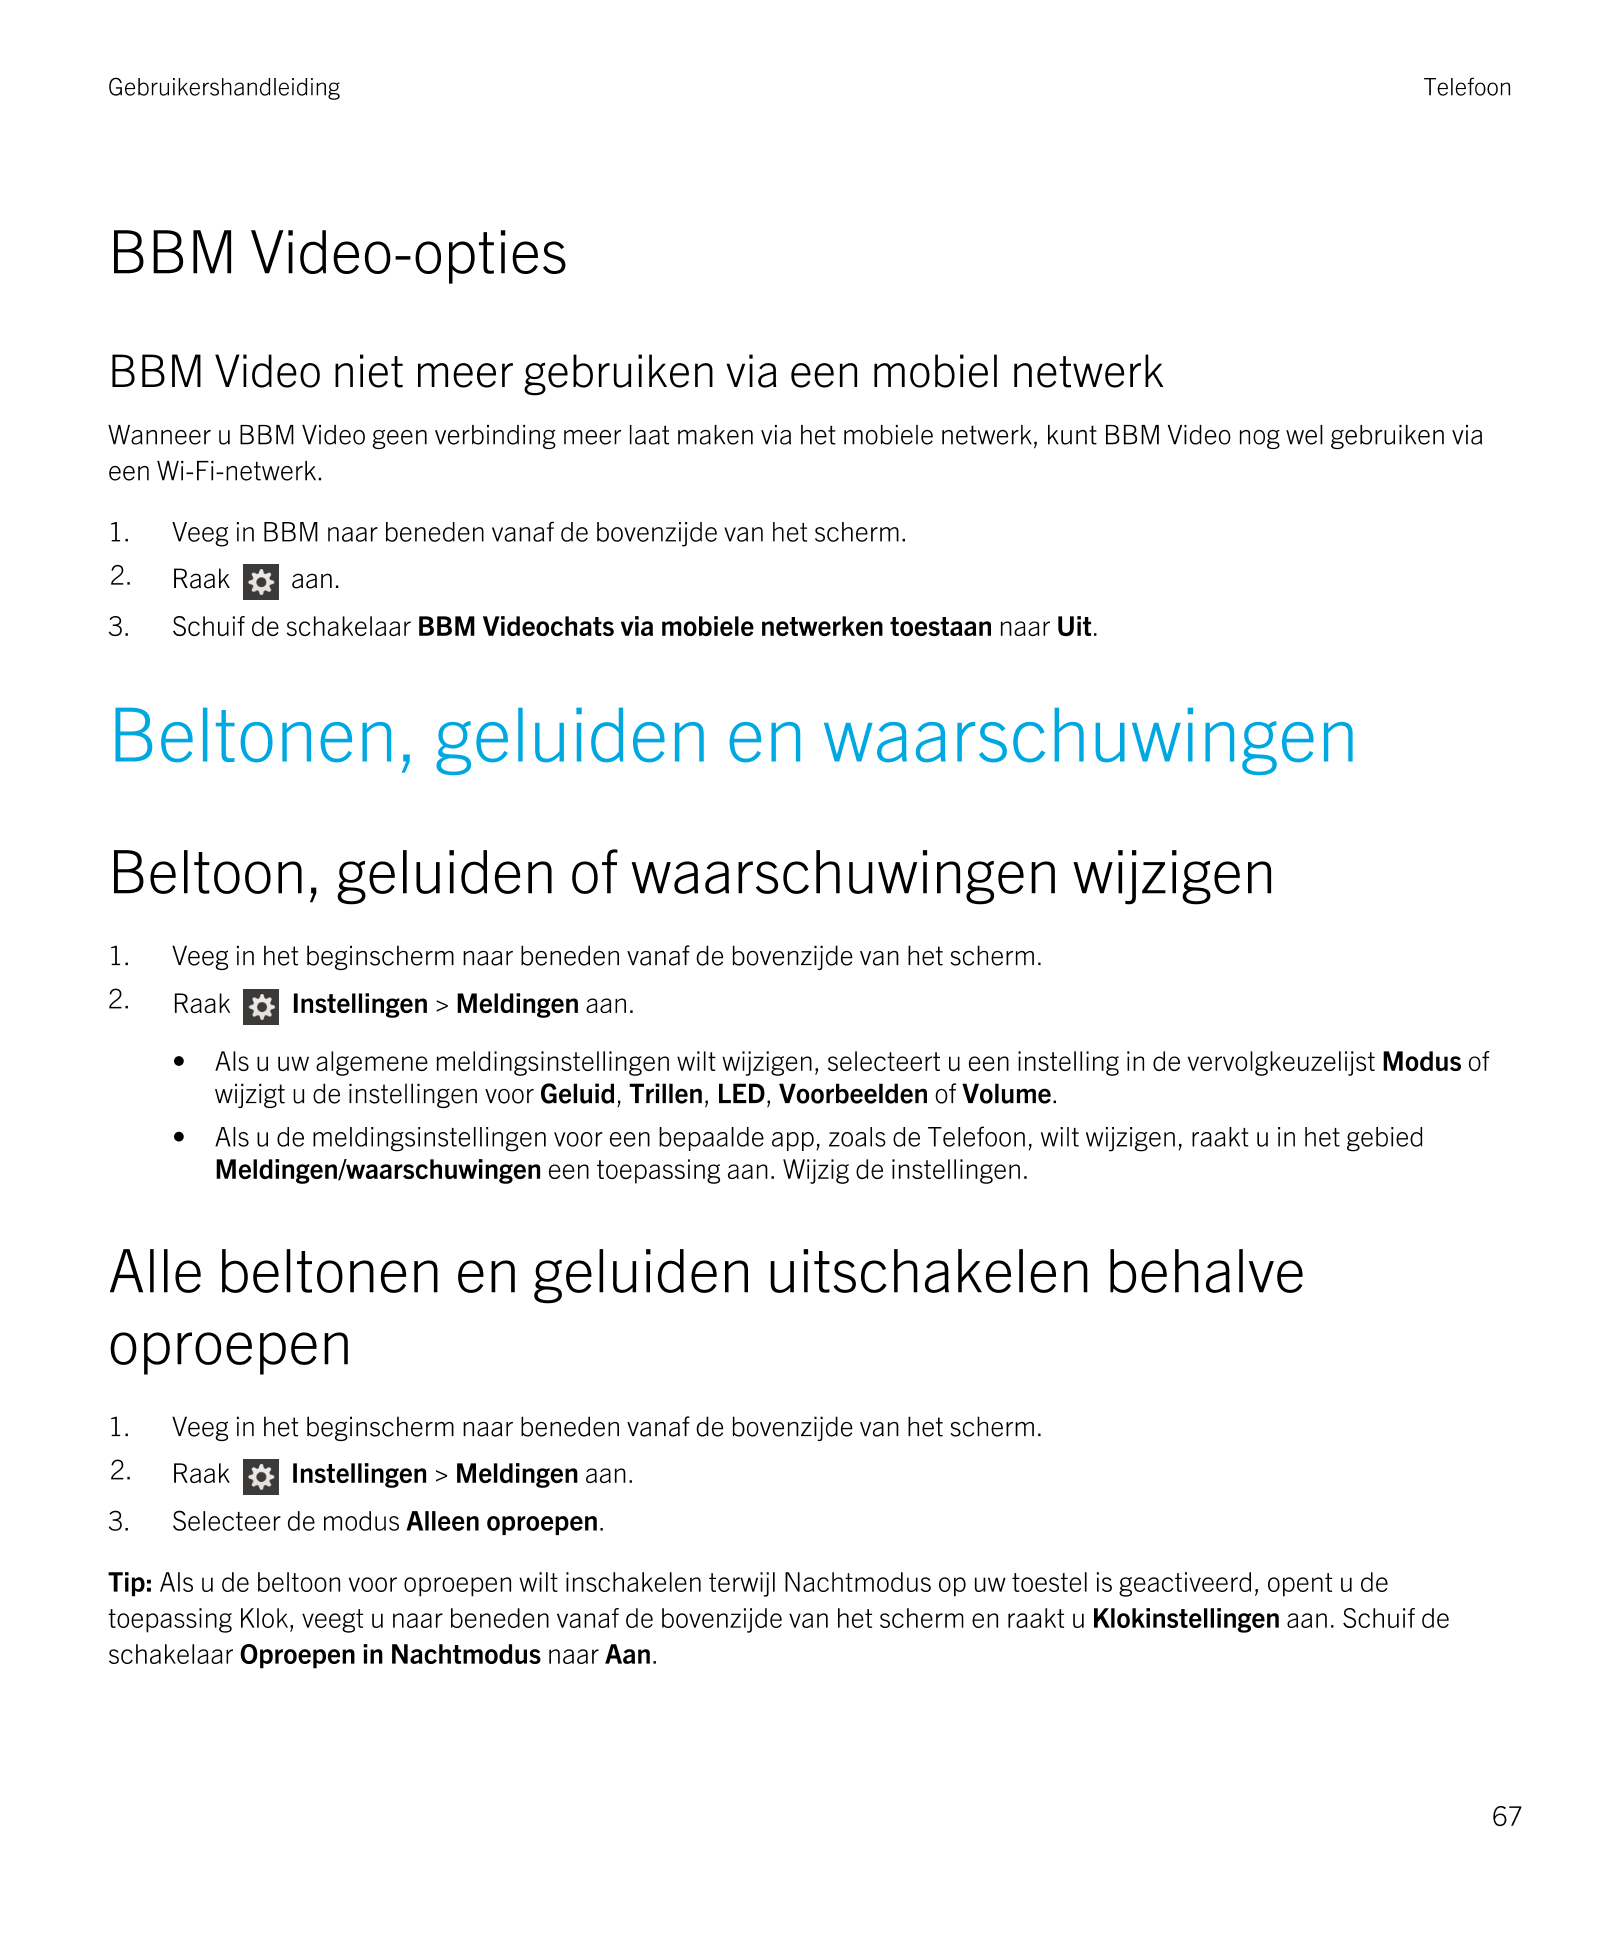 Gebruikershandleiding Telefoon
BBM Video-opties
BBM Video niet meer gebruiken via een mobiel netwerk
Wanneer u  BBM Video geen v